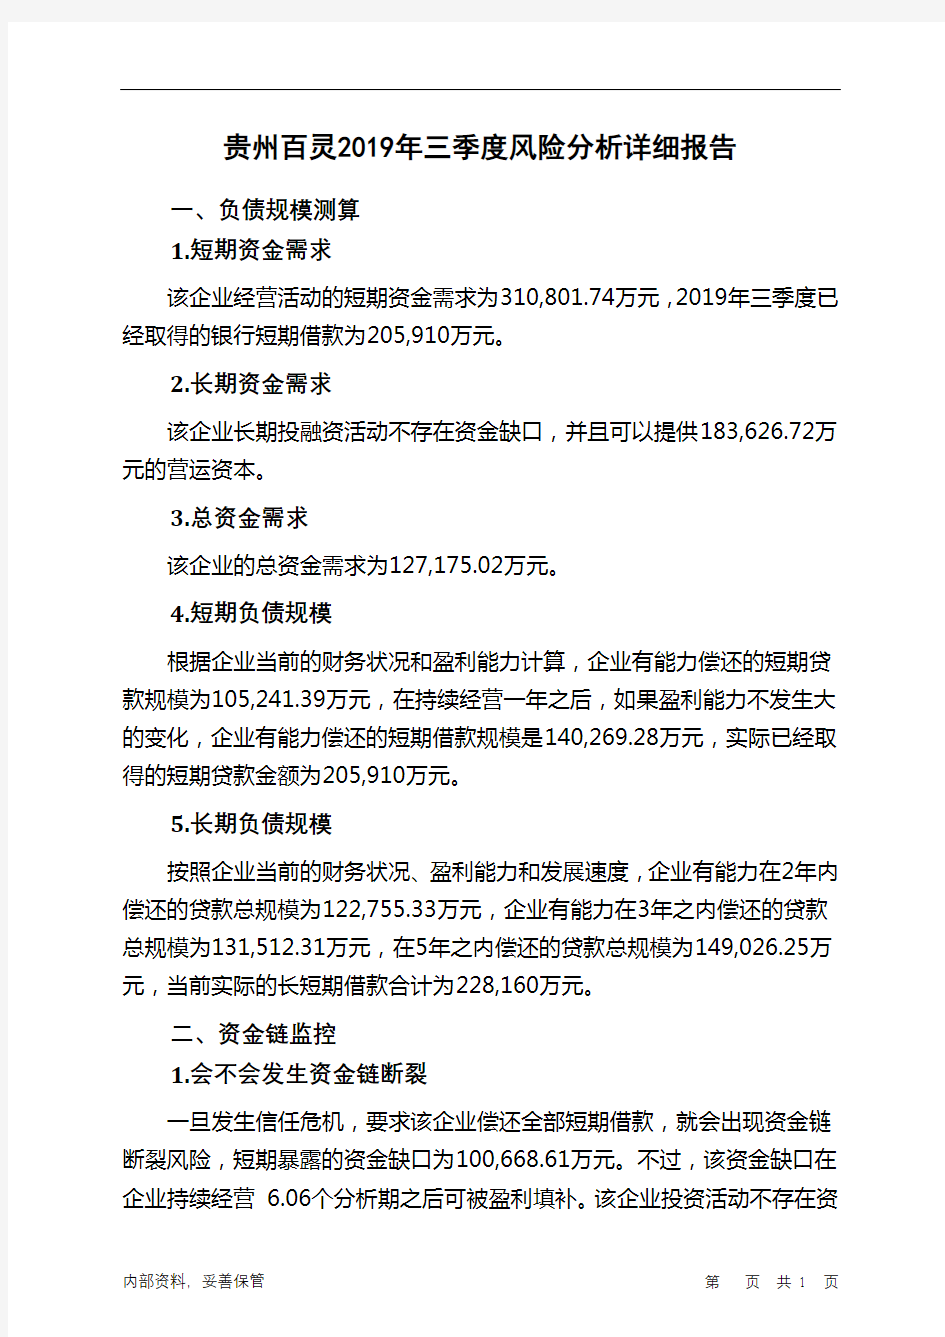 贵州百灵2019年三季度财务风险分析详细报告